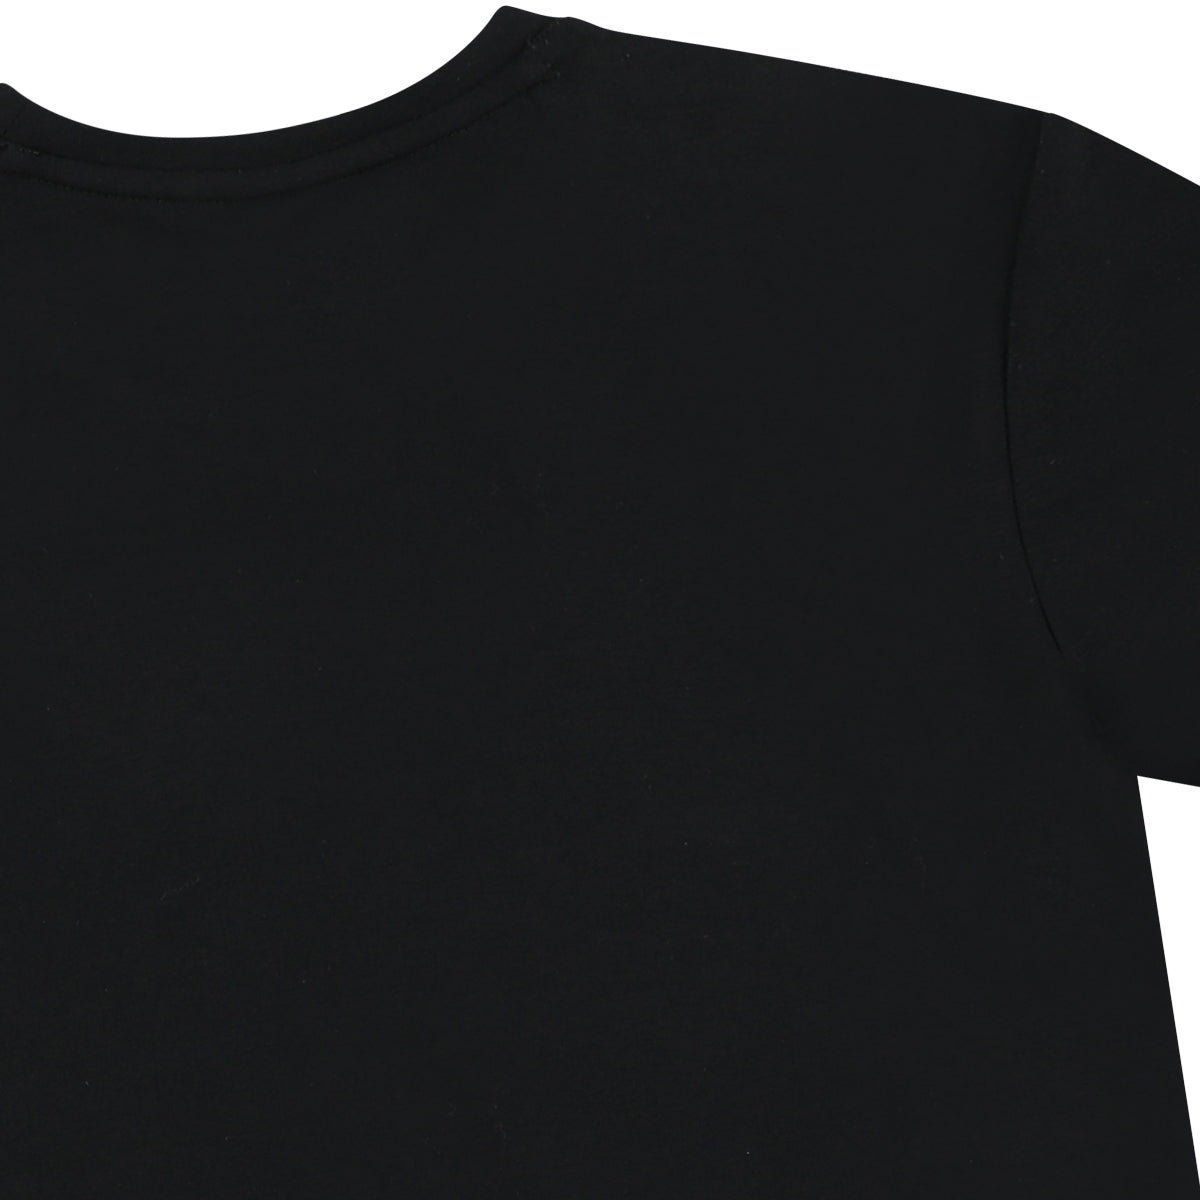 חולצת טי שרט REPLAY פס לוגו שחור בשרוולים לילדים